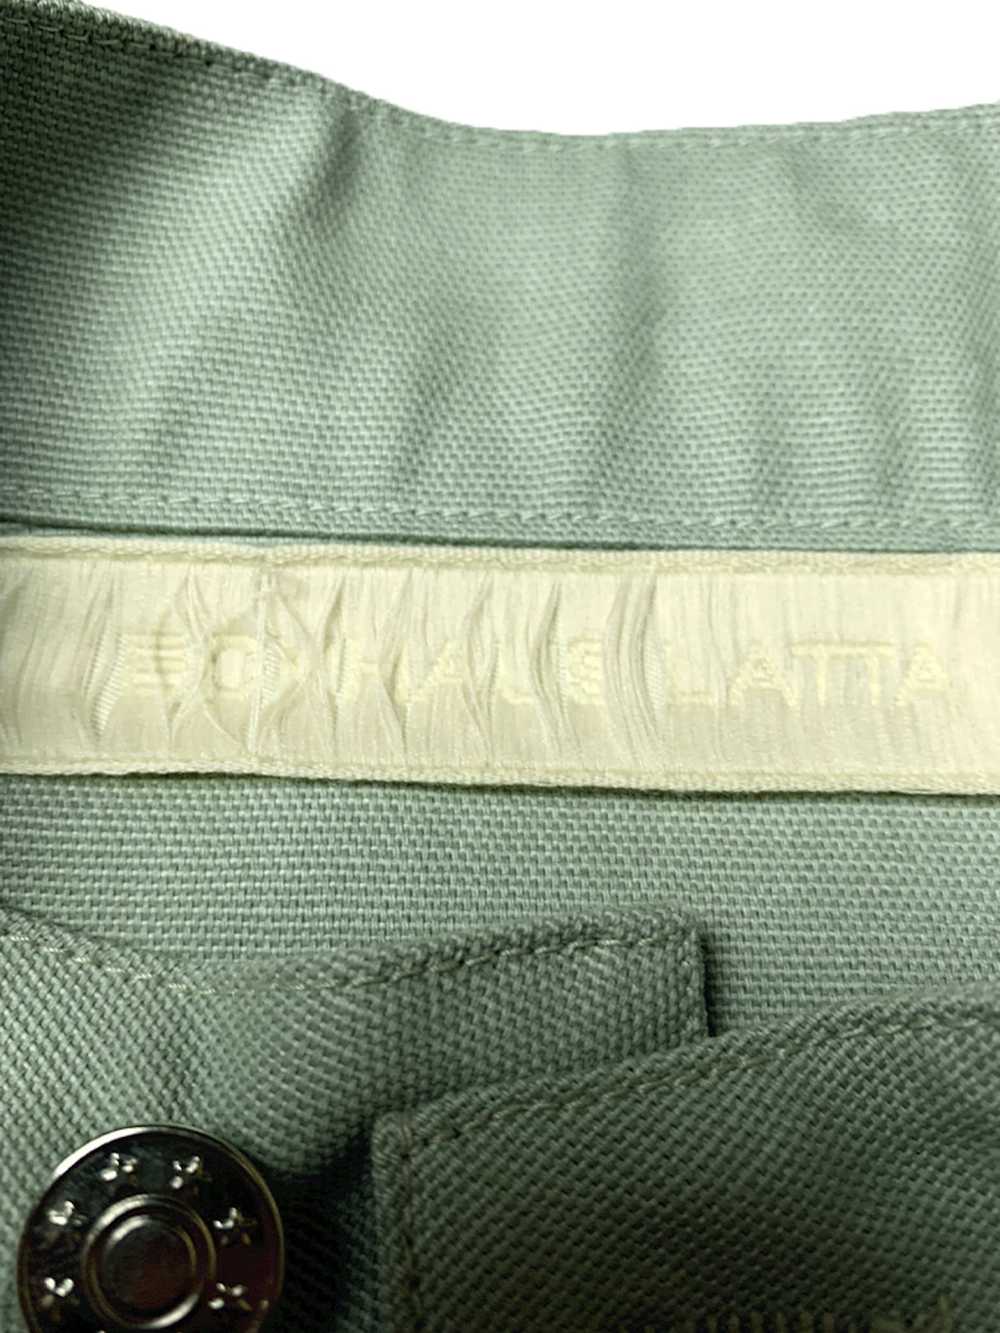 Eckhaus Latta Sage Green Military Shirt Jacket - image 4